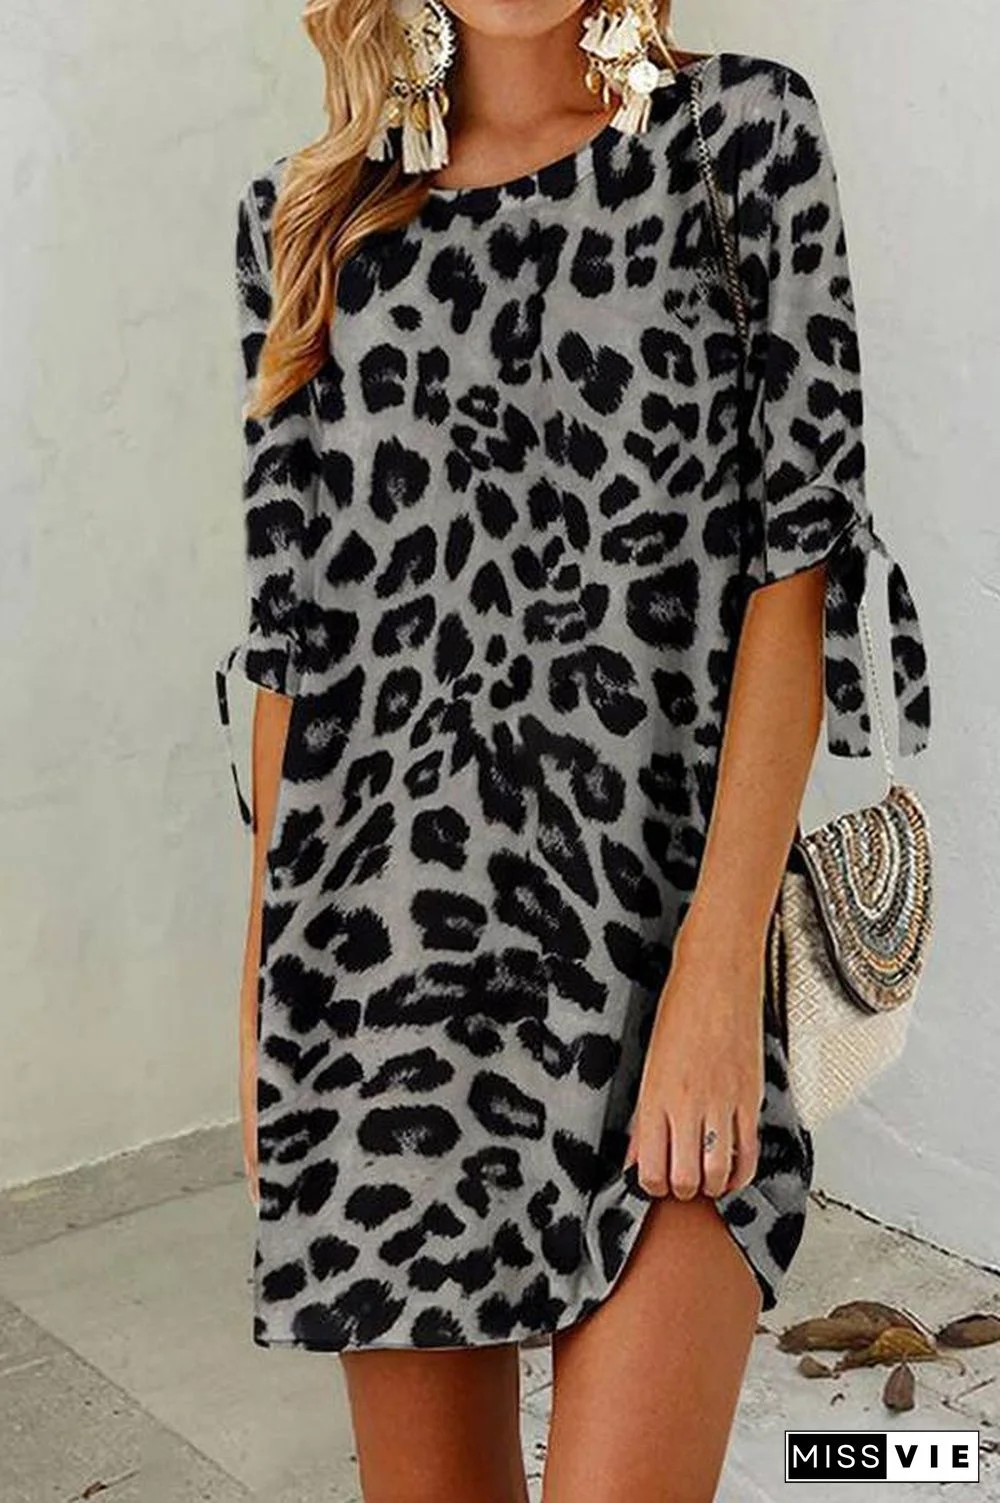 Leopard Print Round Neck Mini Dress (2 Colors) P13148